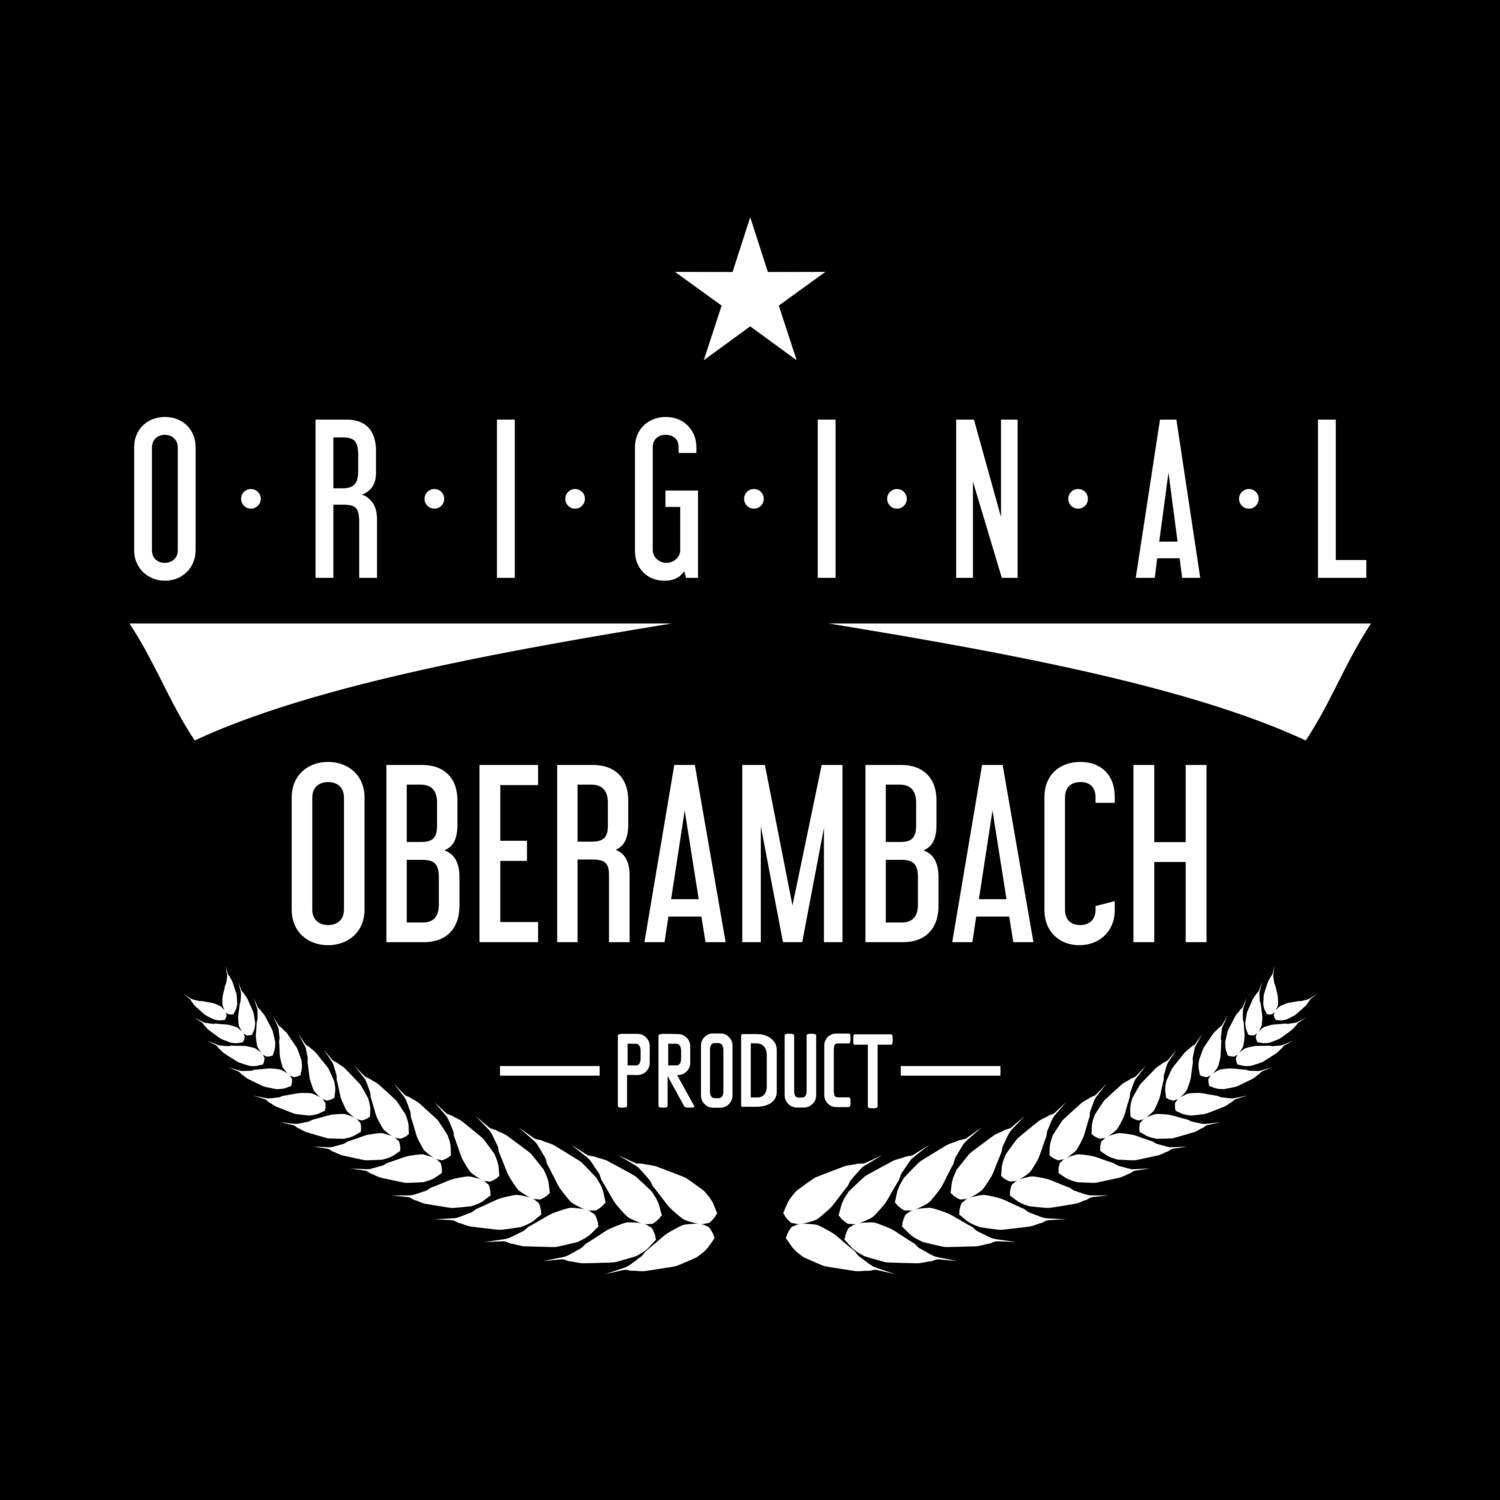 Oberambach T-Shirt »Original Product«